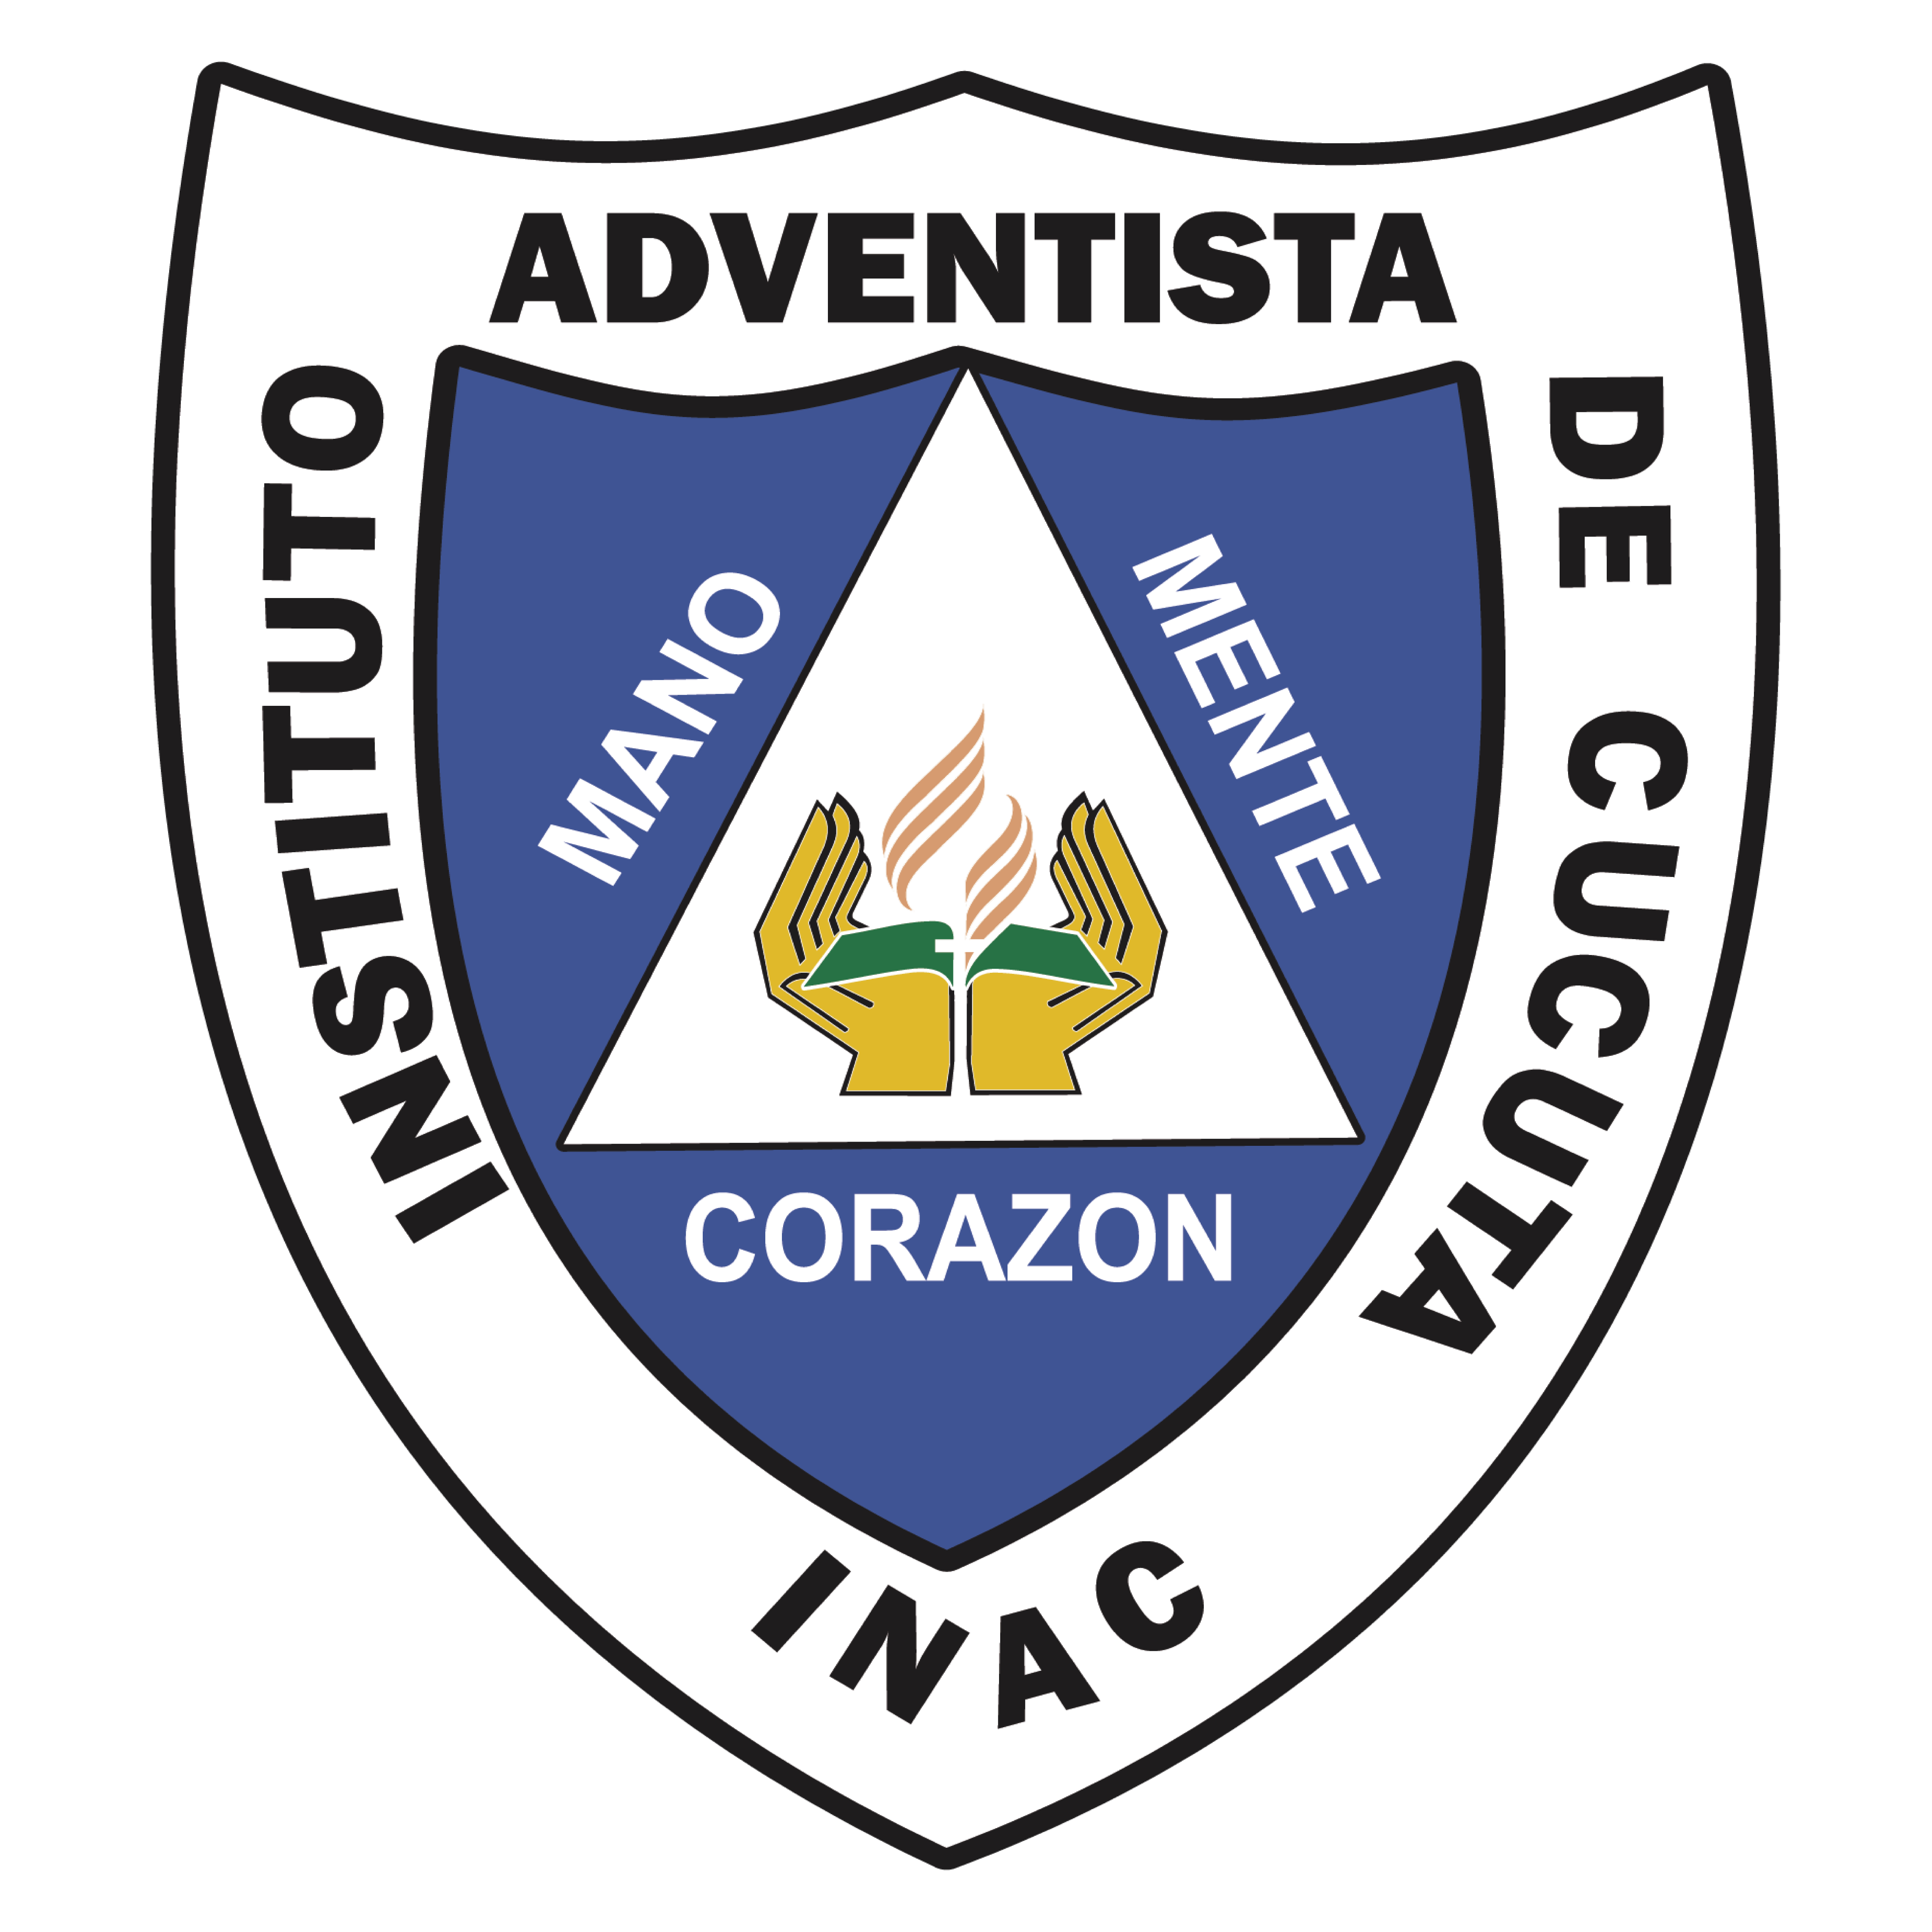 Instituto Adventista de Cúcuta